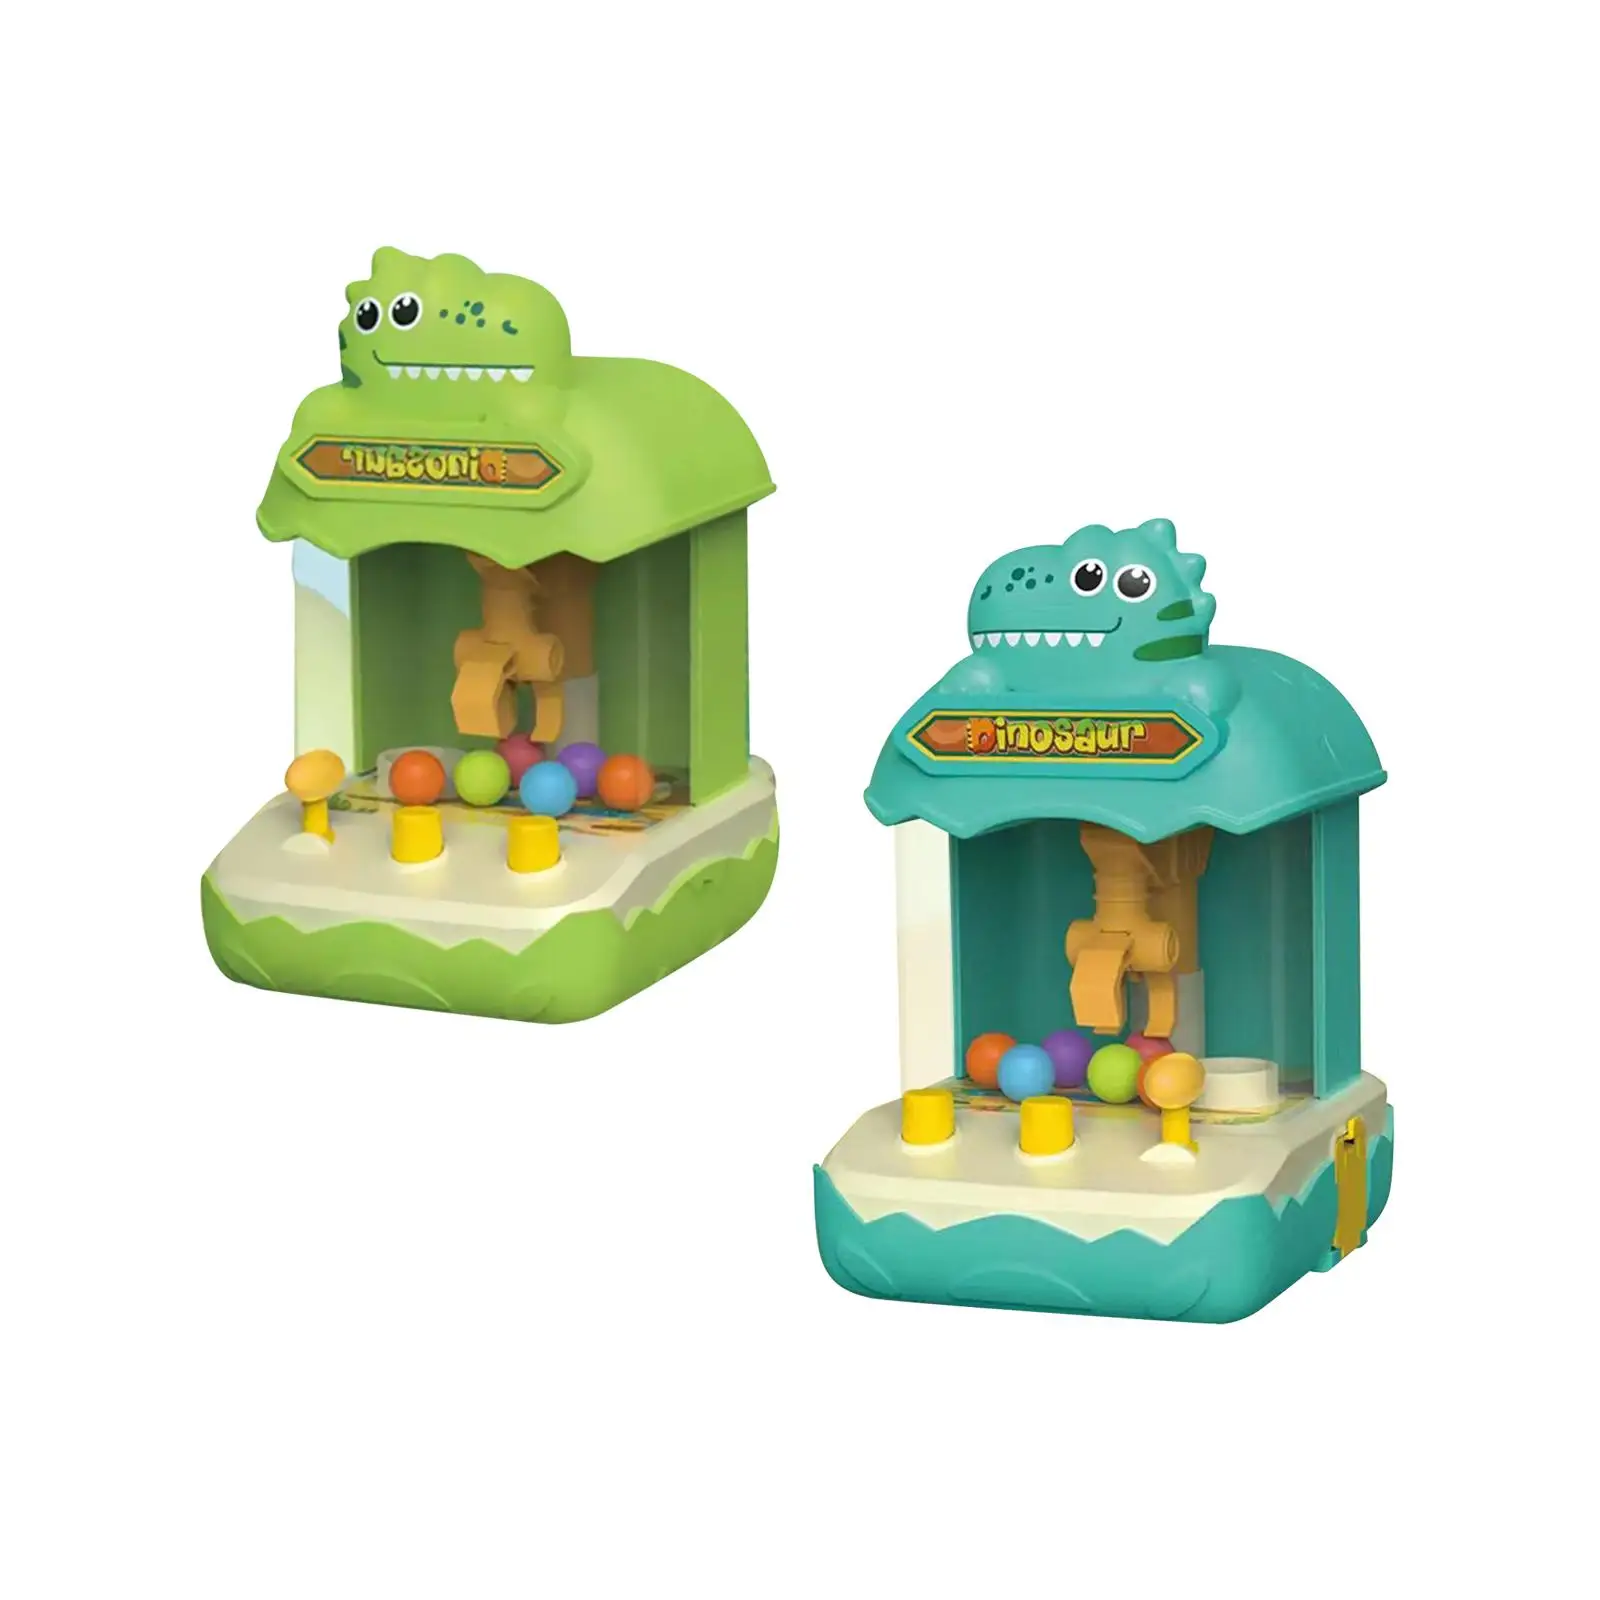 Claw Machine Arcade Game Doll Machine for Children Boys Girls Kids Parent Child Interactive Birthday Gifts